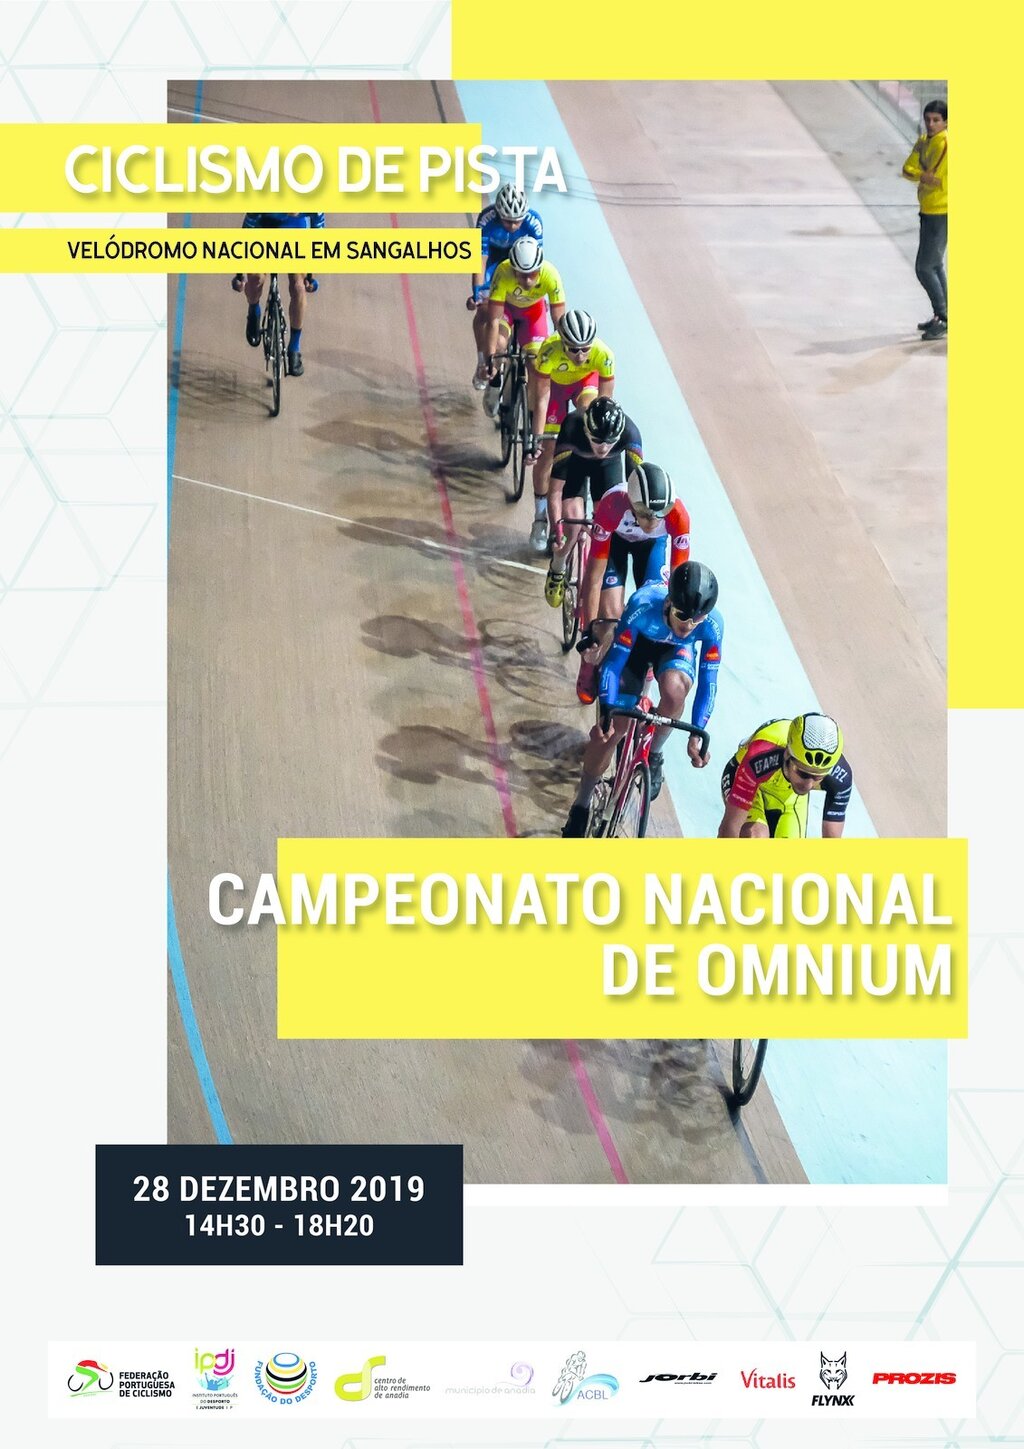 Ciclismo de Pista - Campeonato Nacional de Omnium